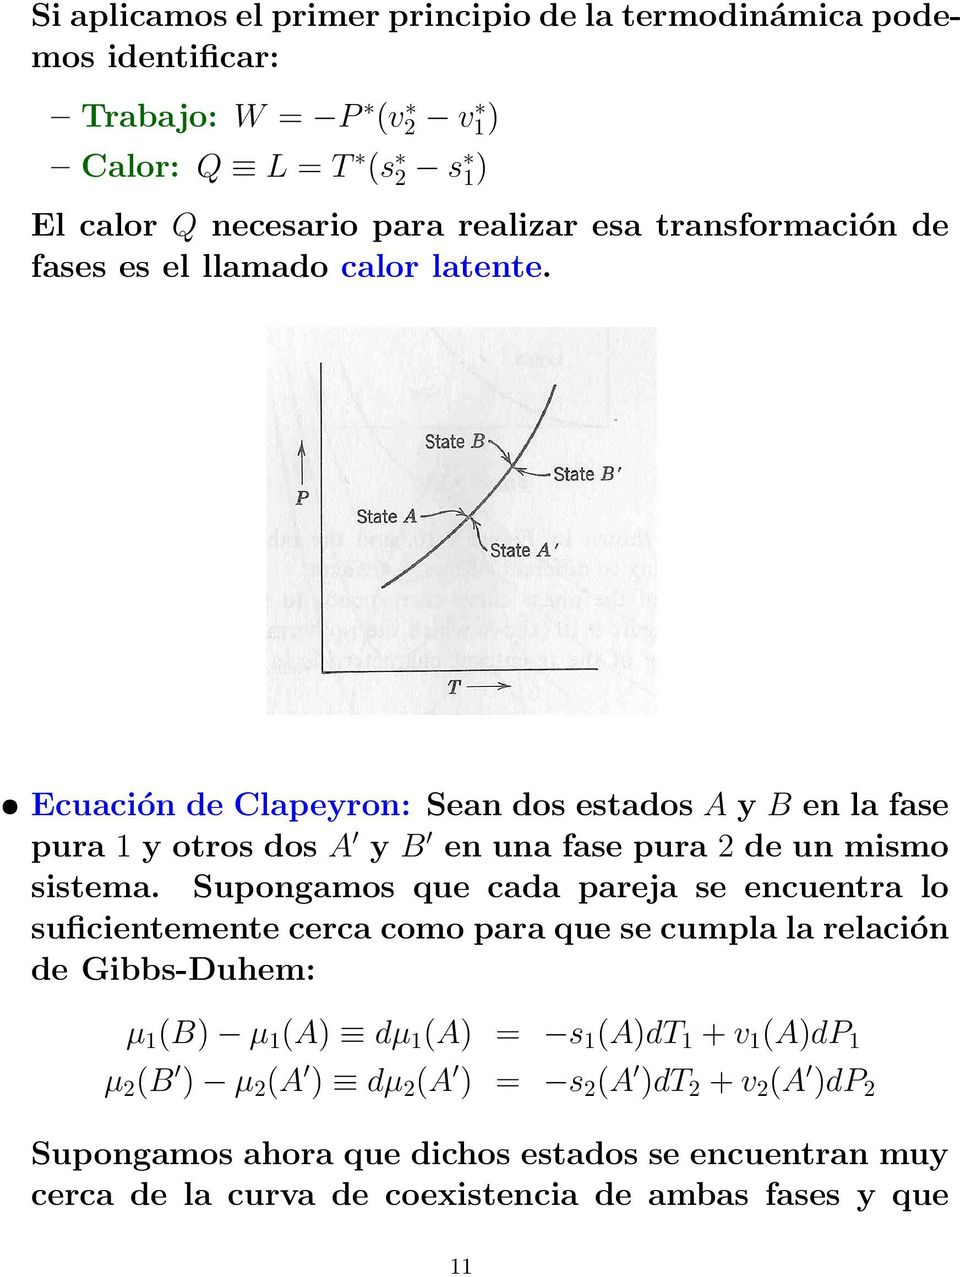 Ecuación de Clapeyron: Sean dos estados A y B en la fase pura 1 y otros dos A y B en una fase pura 2 de un mismo sistema.